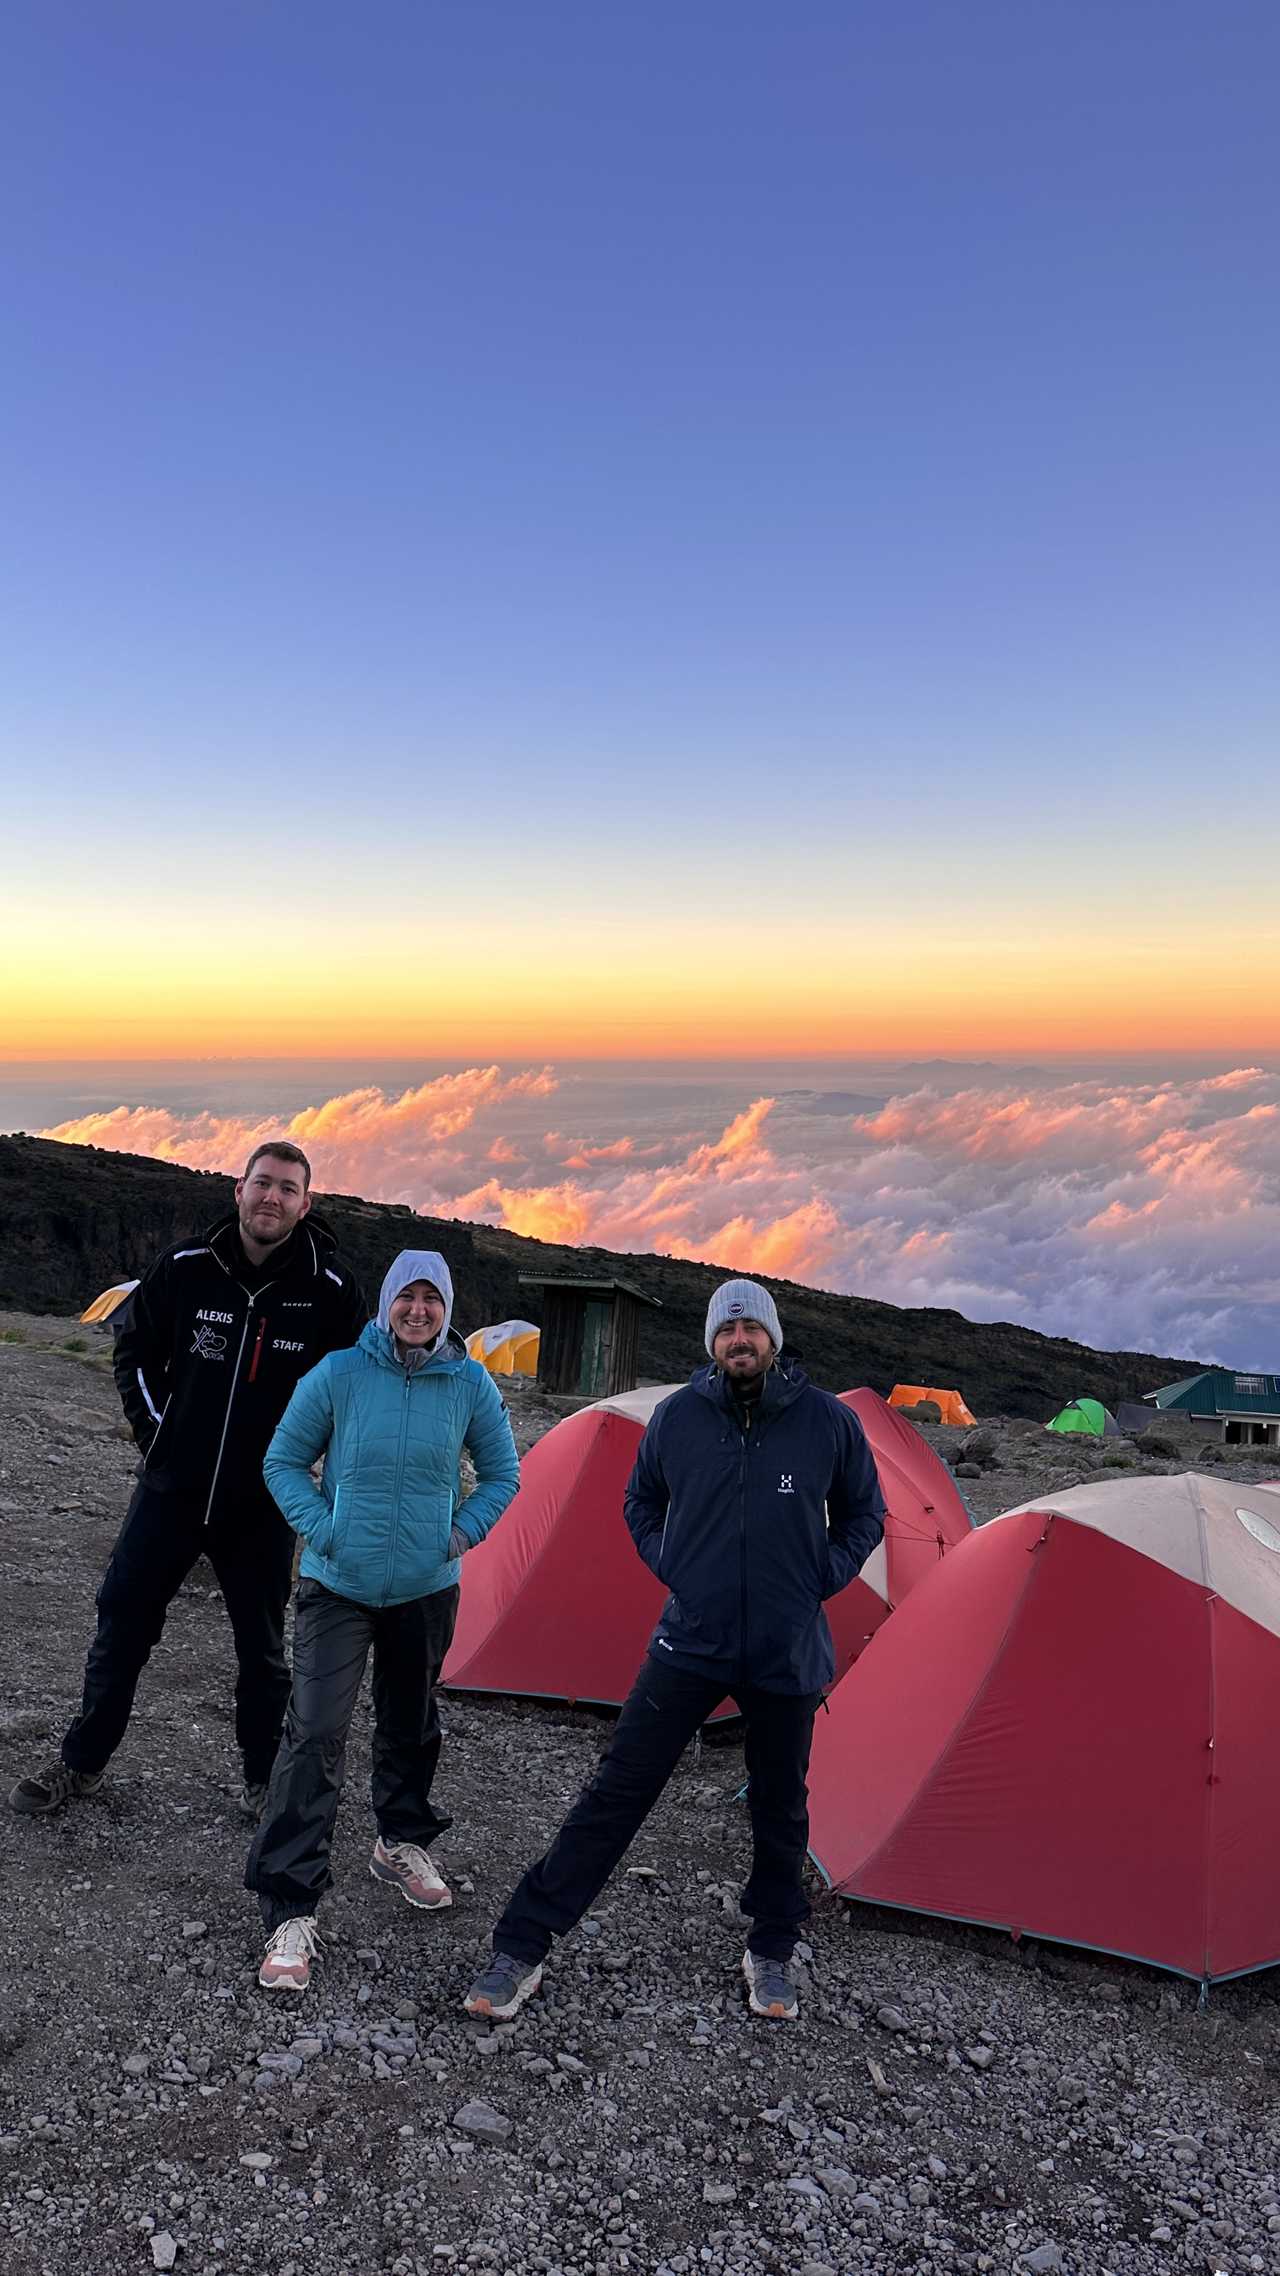 randonneurs dans un campement pendant l'ascension du Kilimandjaro en Tanzanie